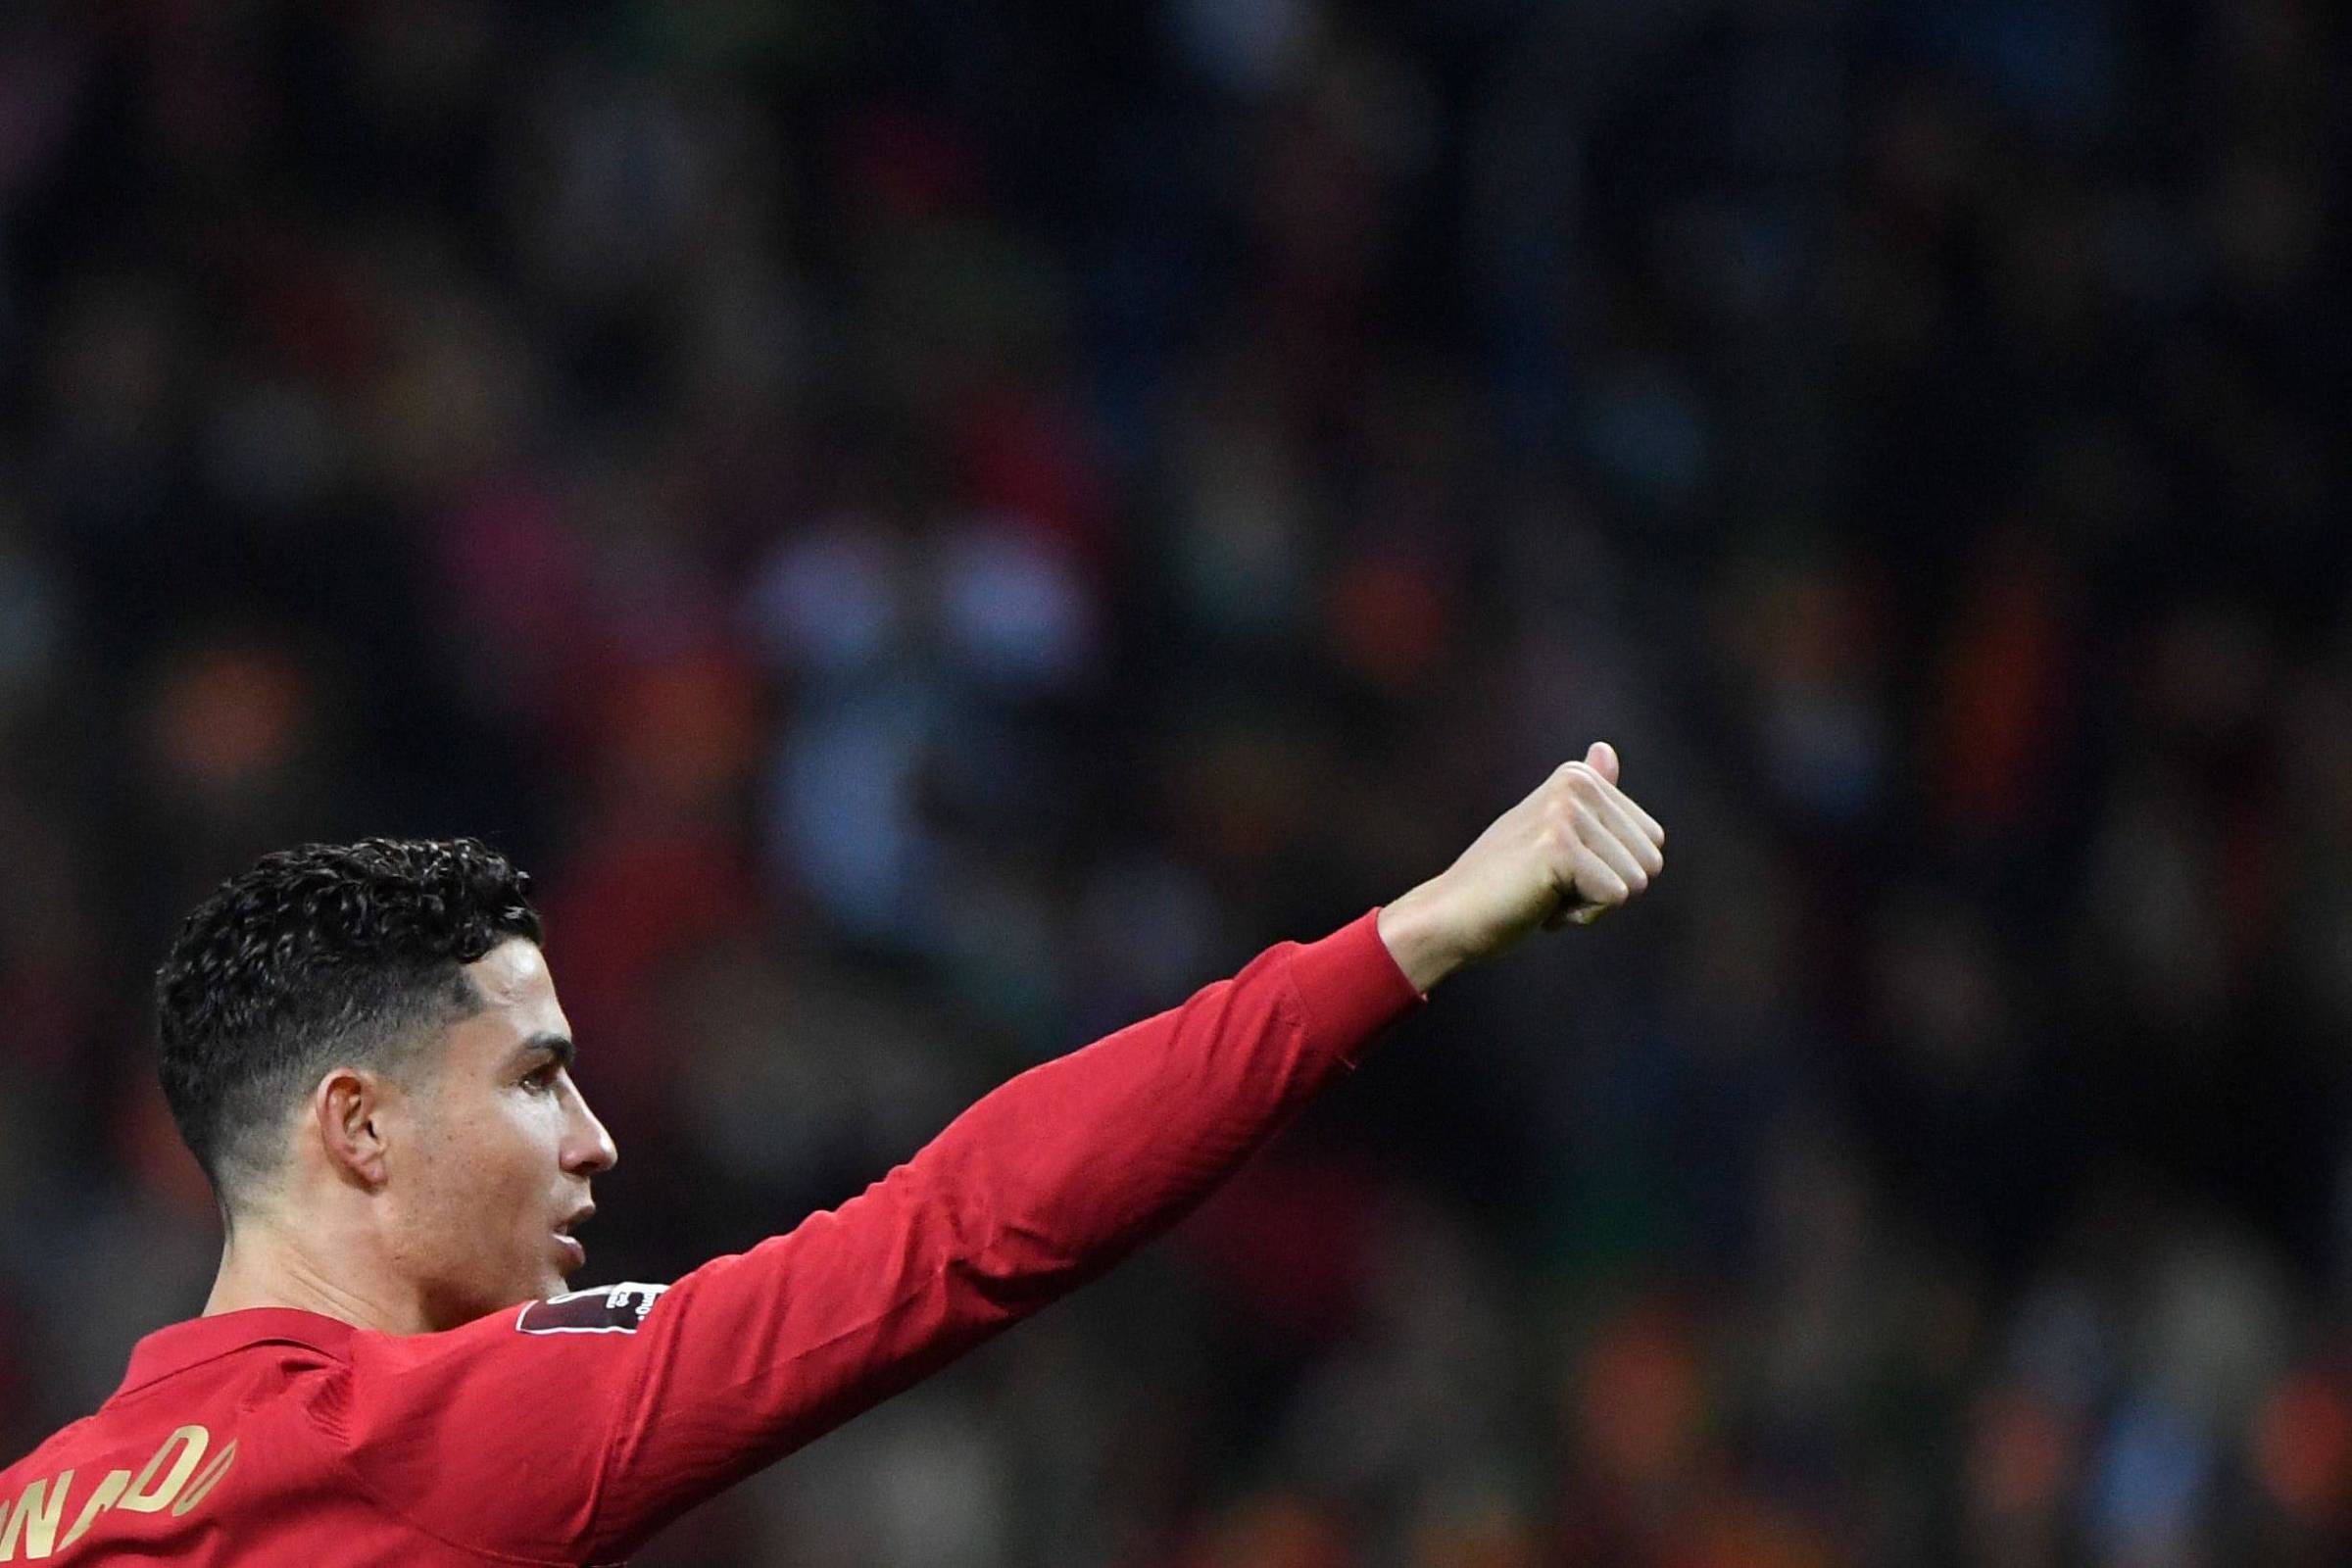 Cristiano Ronaldo entra para seleto grupo com marca histórica em Copas